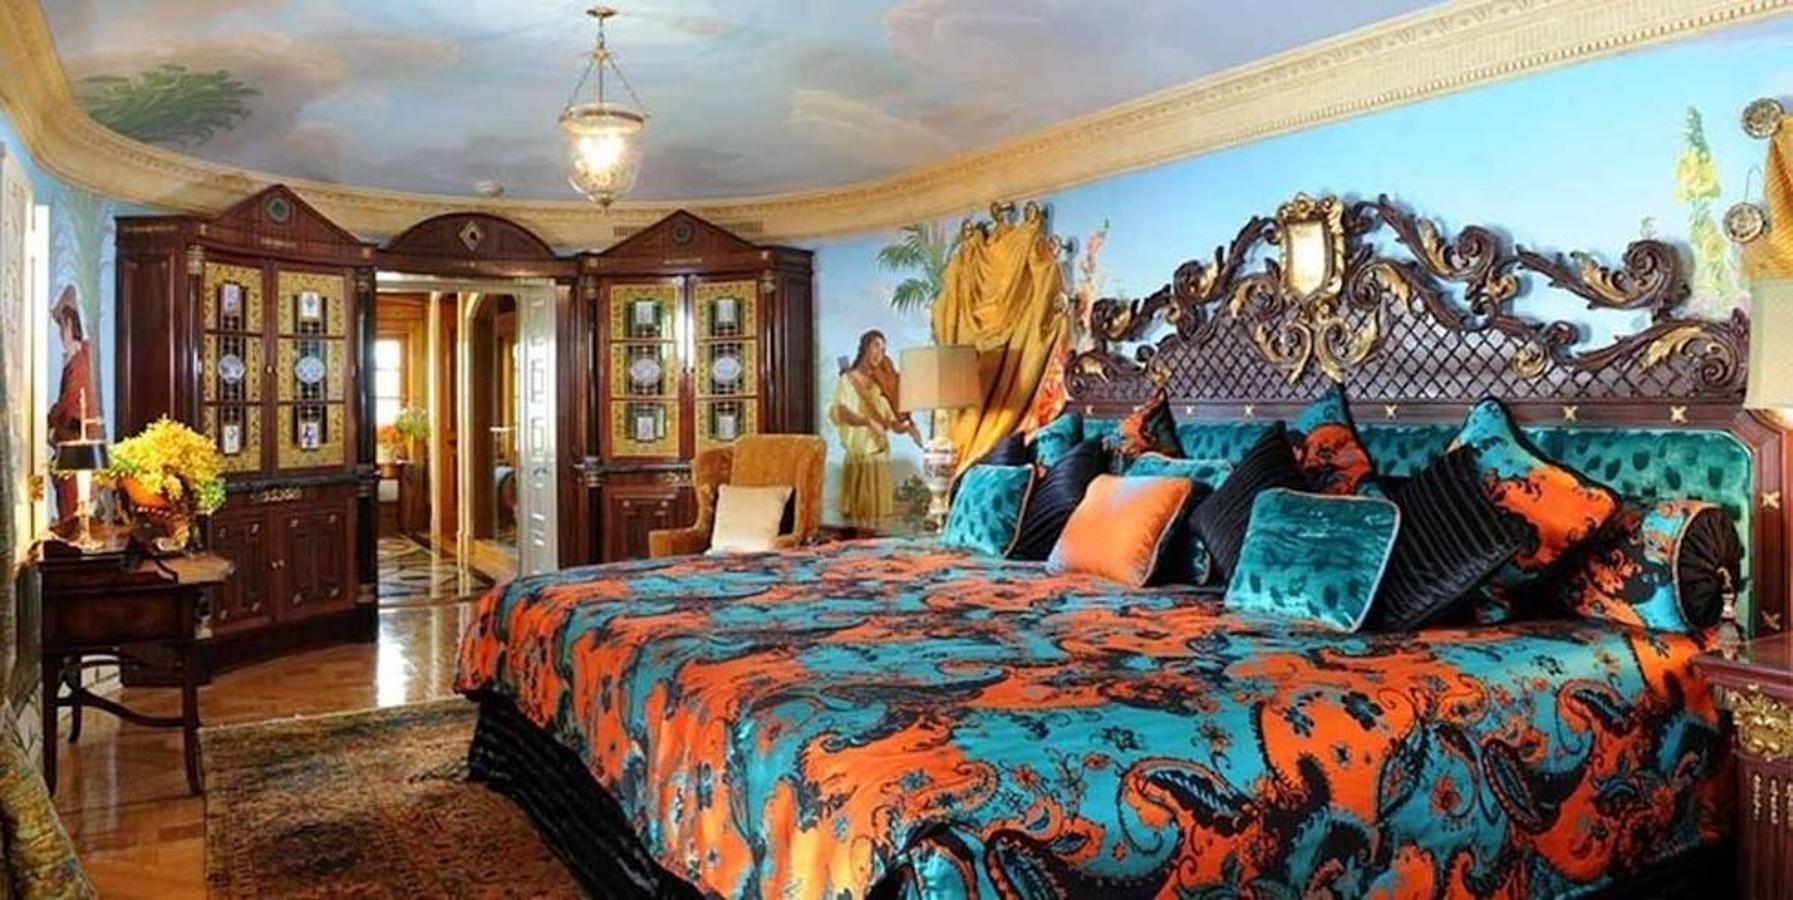 Suite La Villa. Era el dormitorio de Versace, la estancia más emblemática del complejo